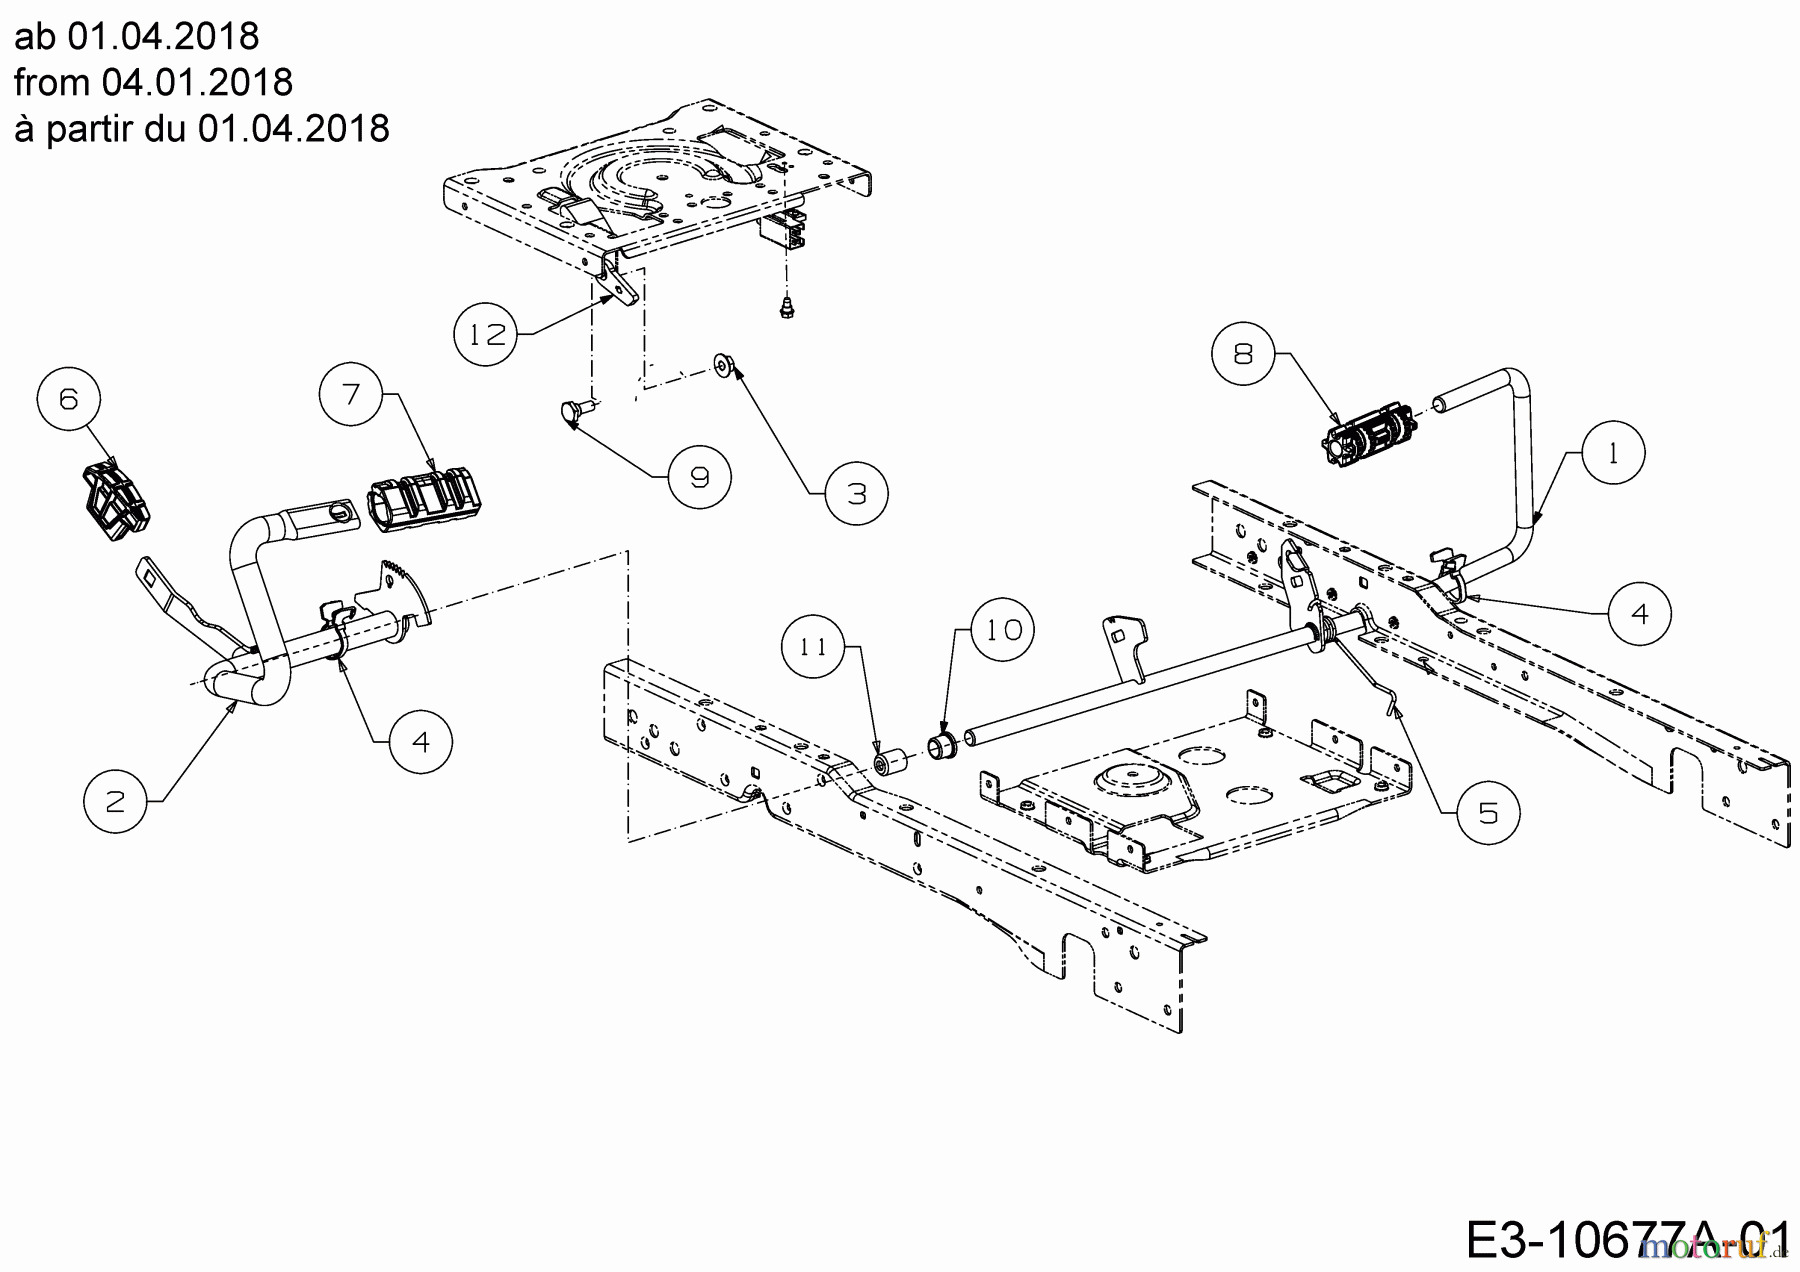  Cub Cadet Lawn tractors XT2 PS117 13BGA1CT603  (2020) Pedals from 04.01.2018